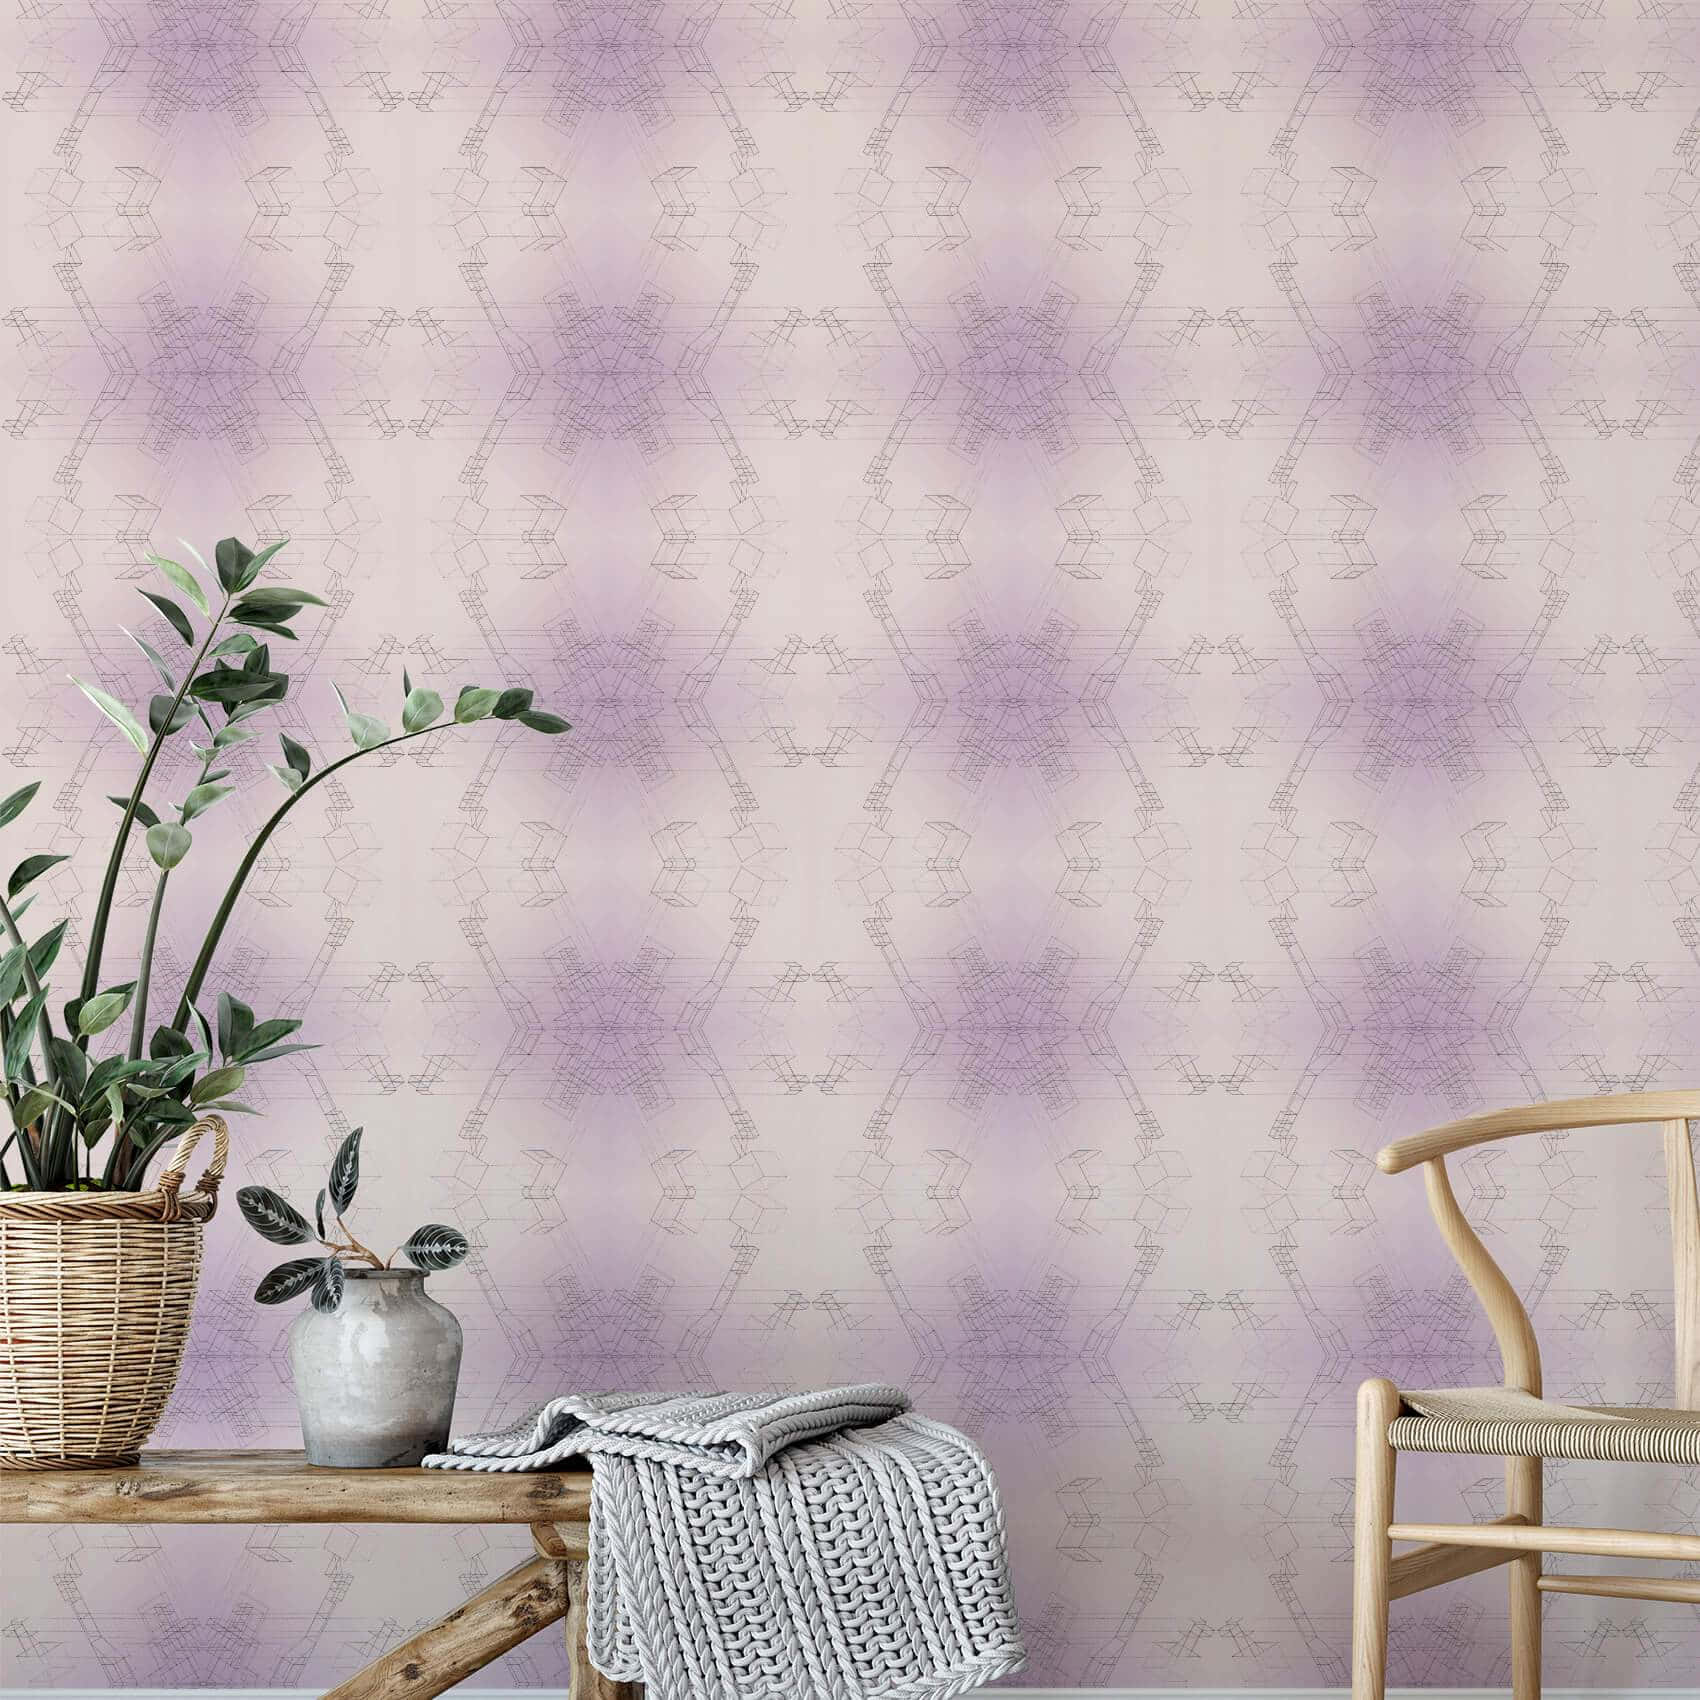 Einelebhafte Lila-farbene Papiertextur Verleiht Ihrem Raum Einen Zarten Hauch. Wallpaper